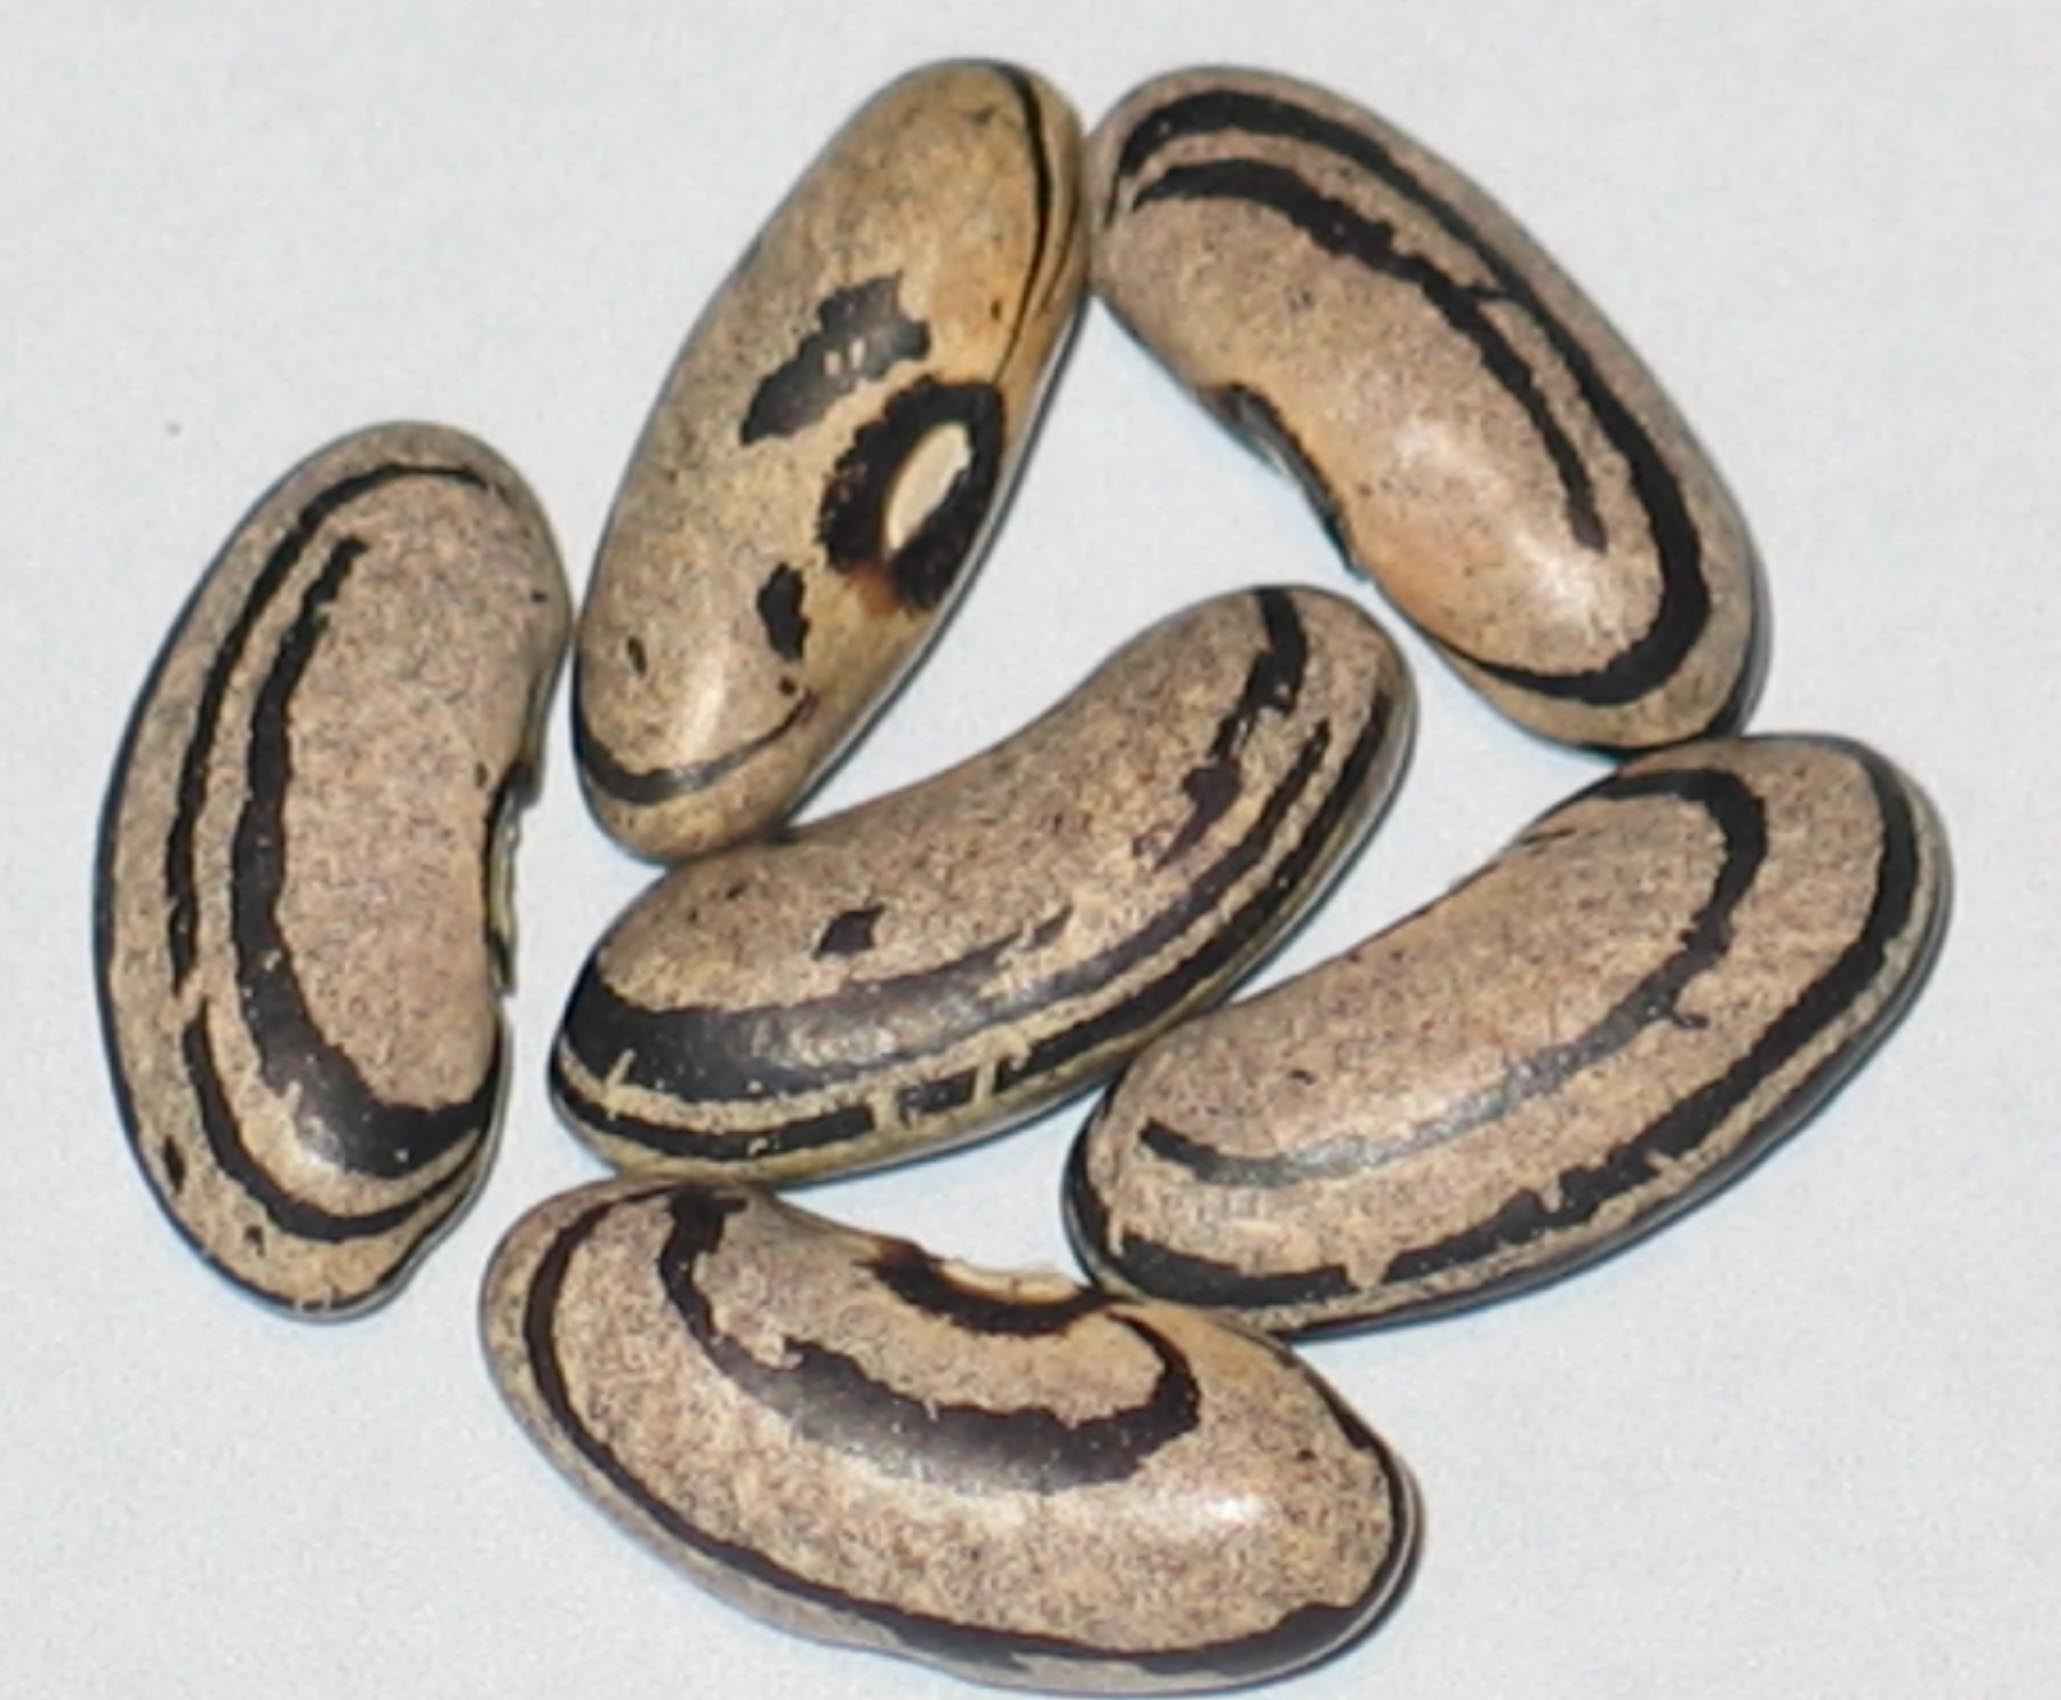 image of Ram's Horn beans